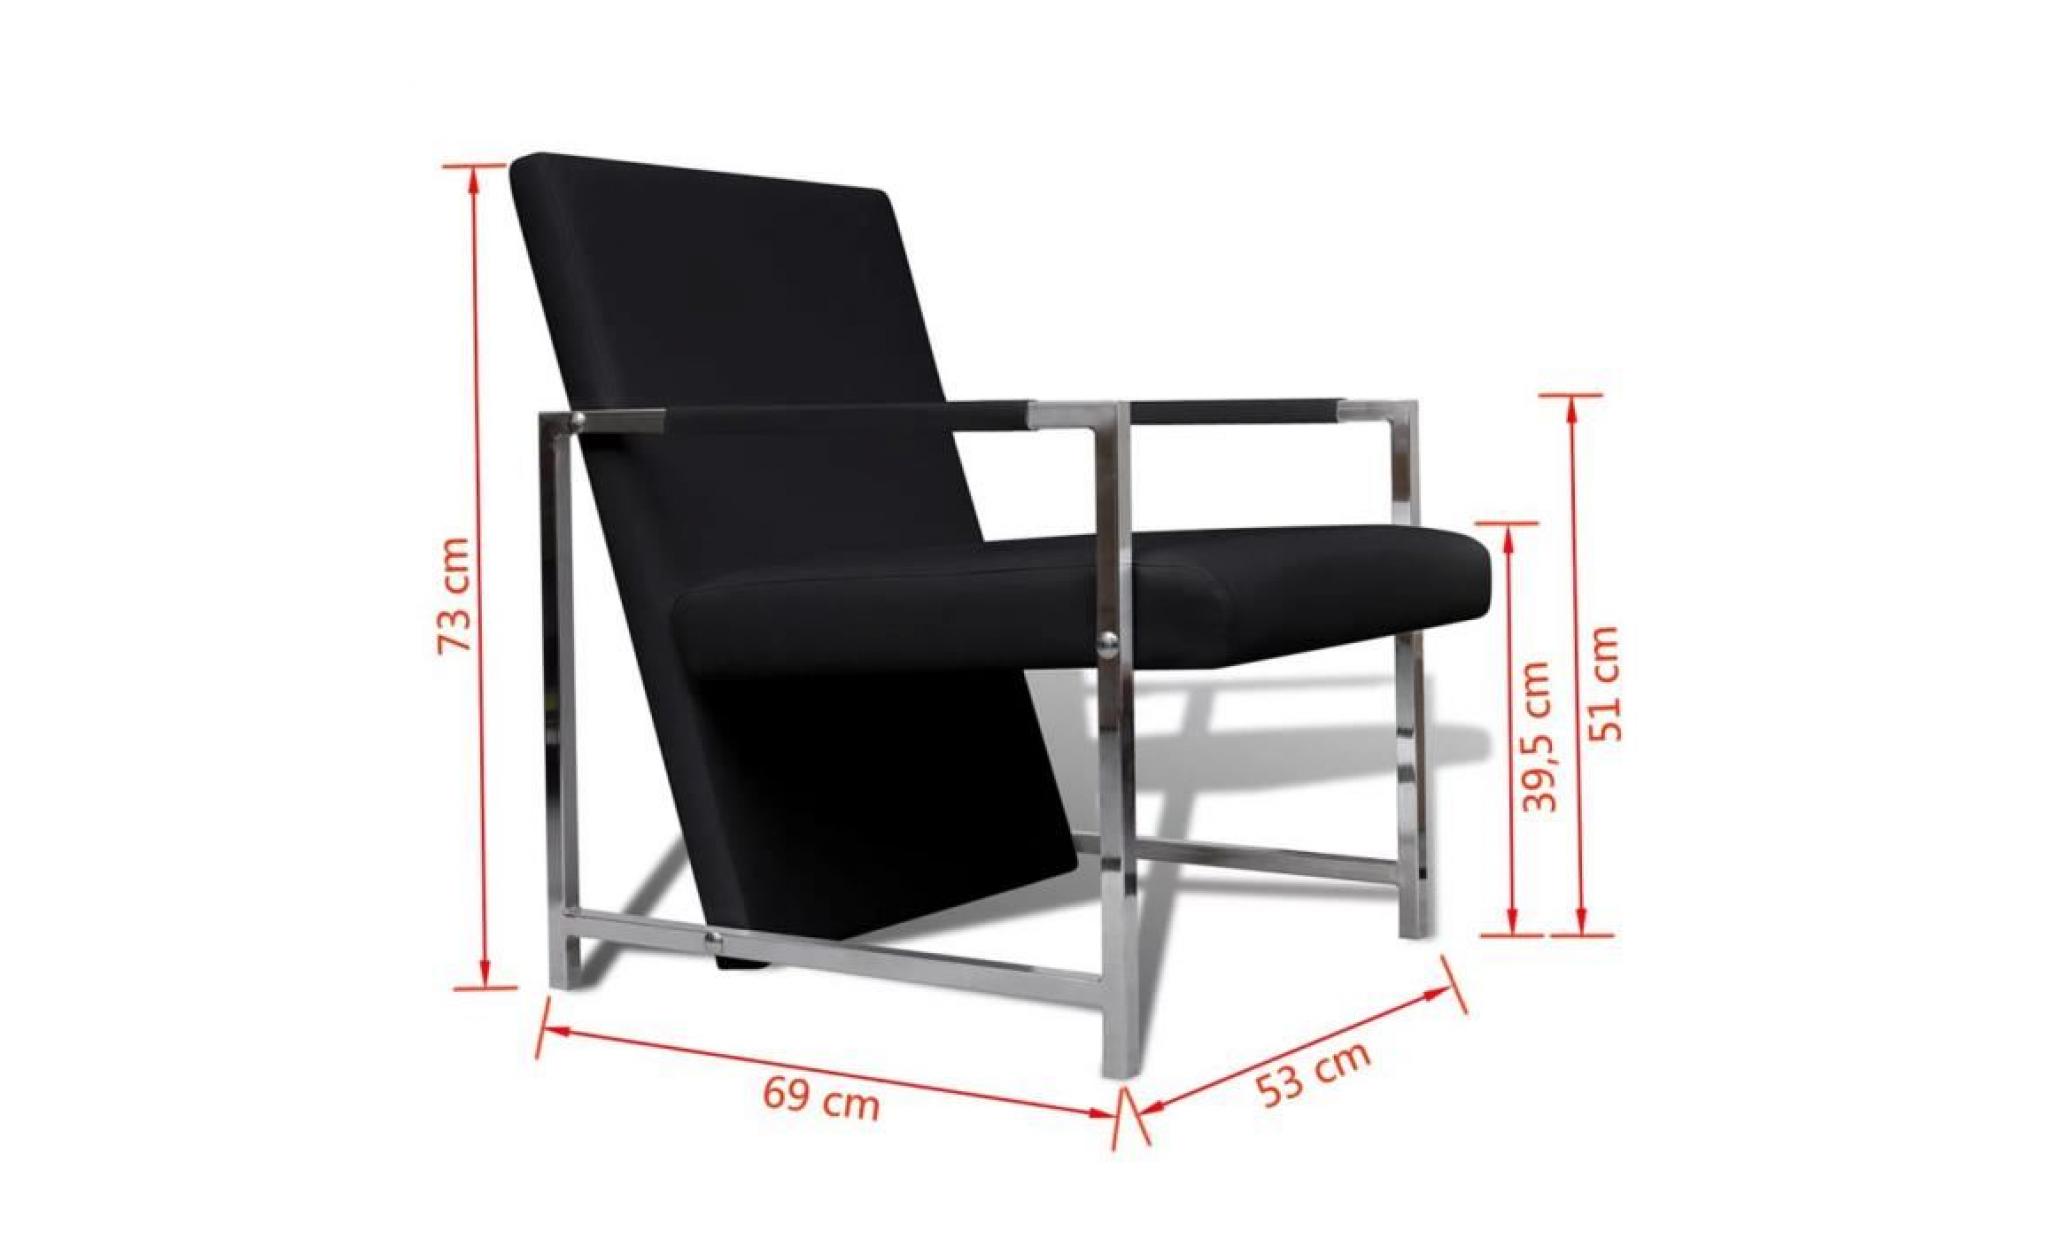 fauteuil magnifique avec pieds chromés noir fauteuil de bureau fauteuil gamer fauteuil scandinave pas cher